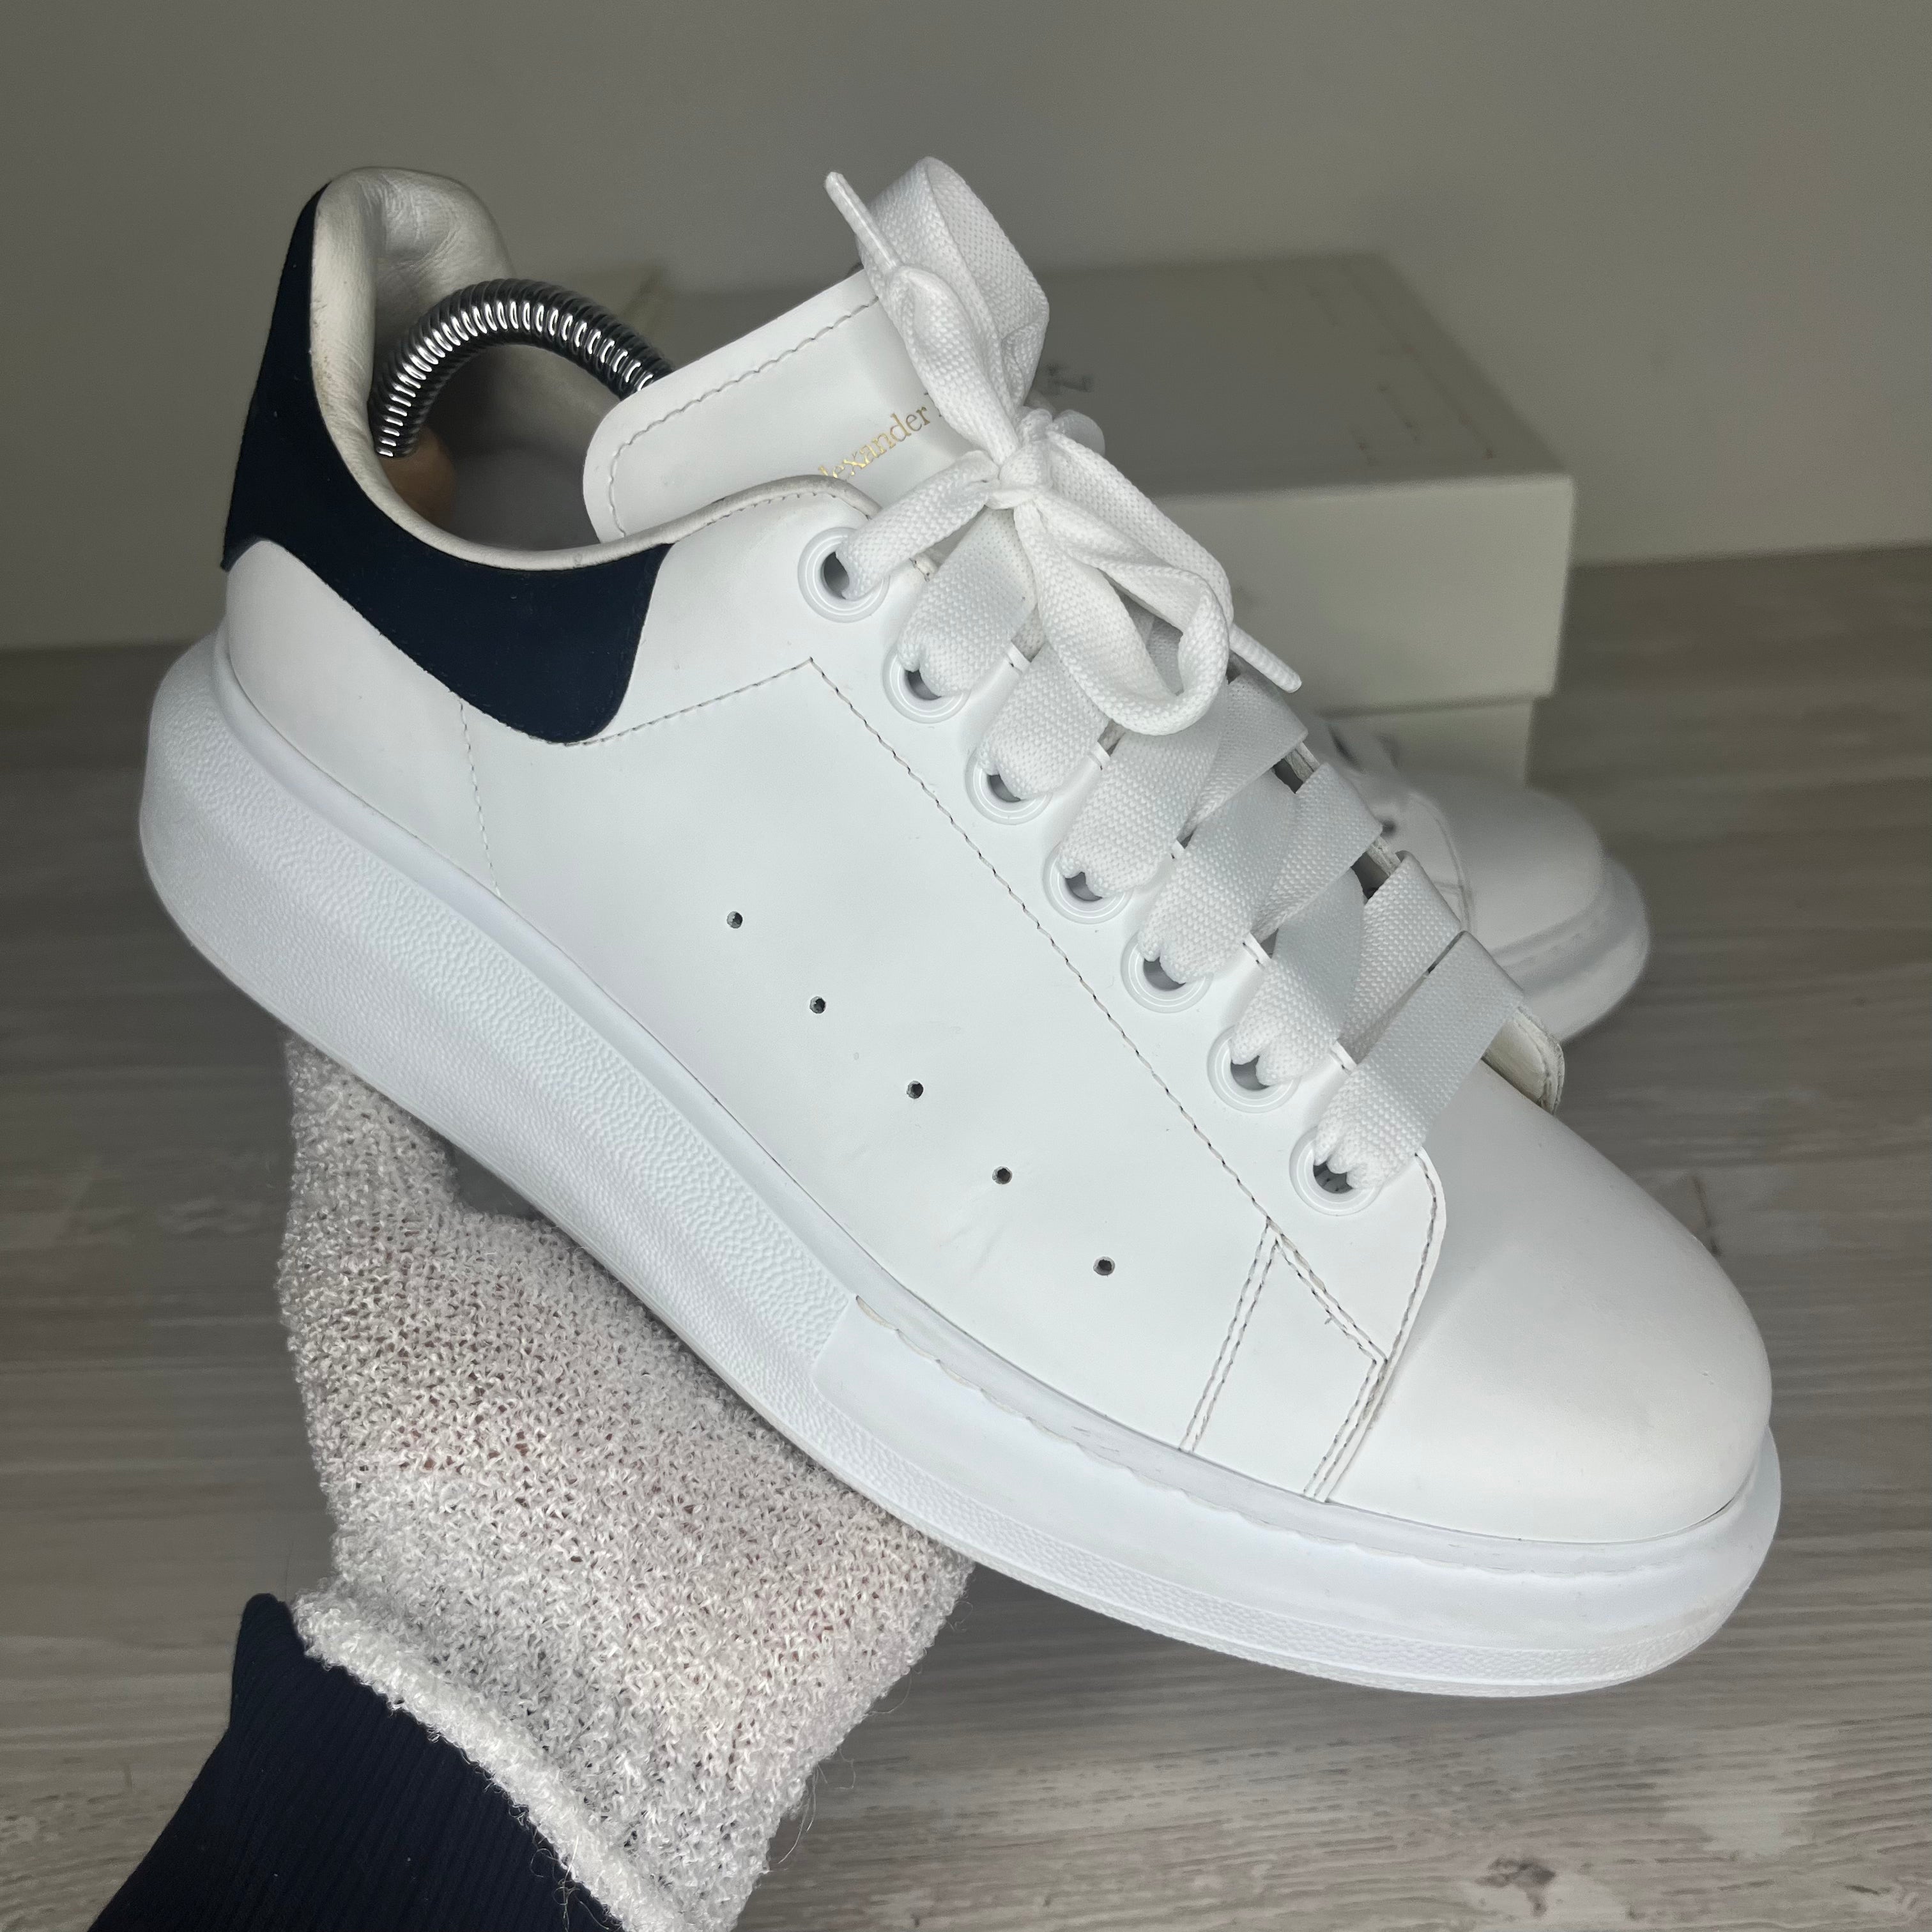 Alexander McQueen Sneakers, 'Hvid Læder' Oversized (40)